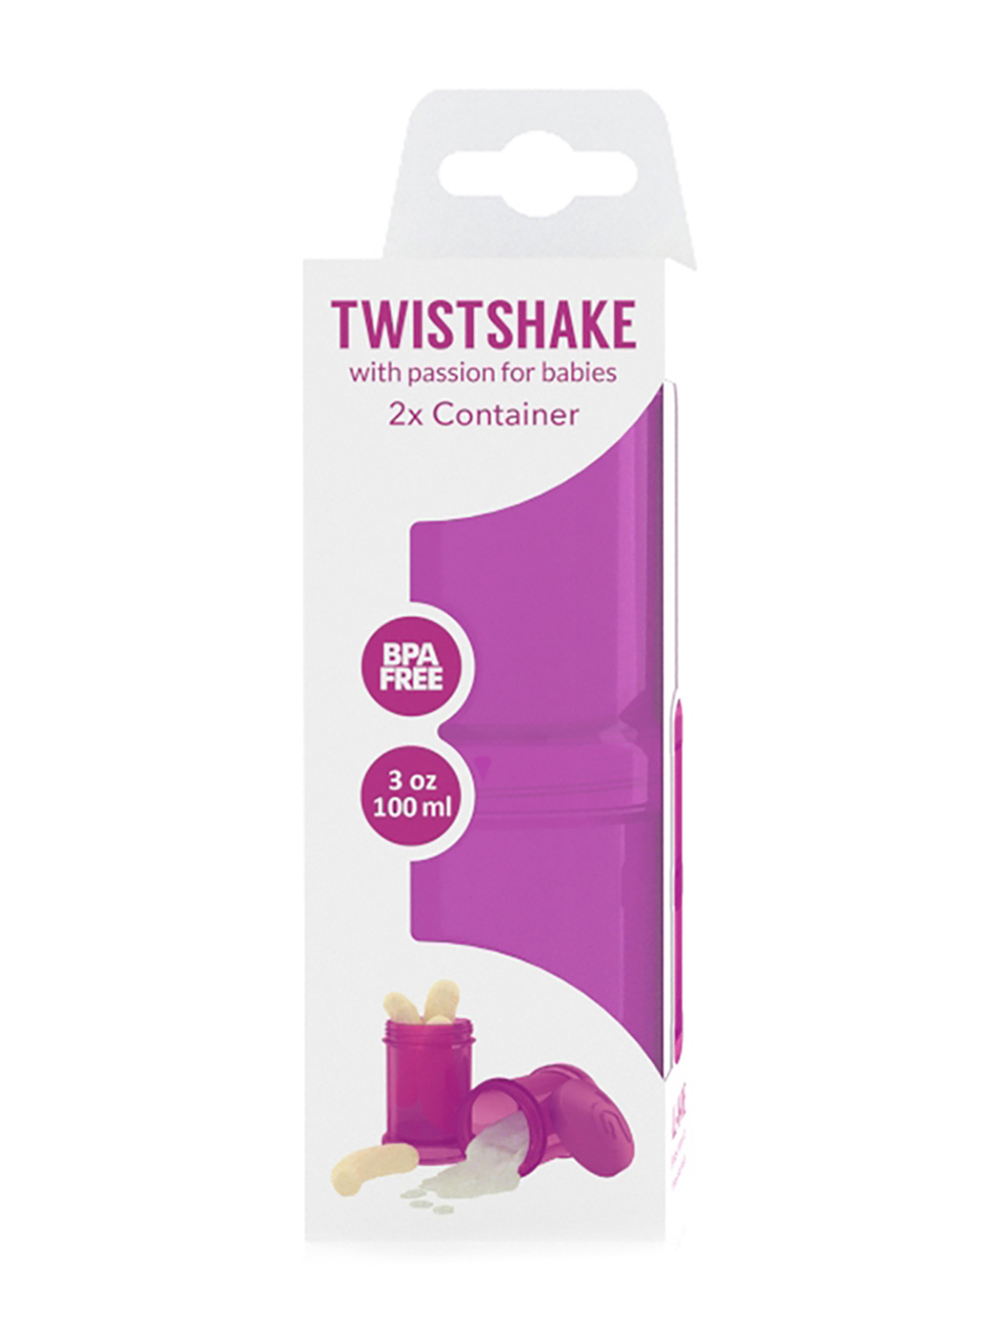 Контейнер для сухой смеси Twistshake в наборе из 2 шт. 100 мл.